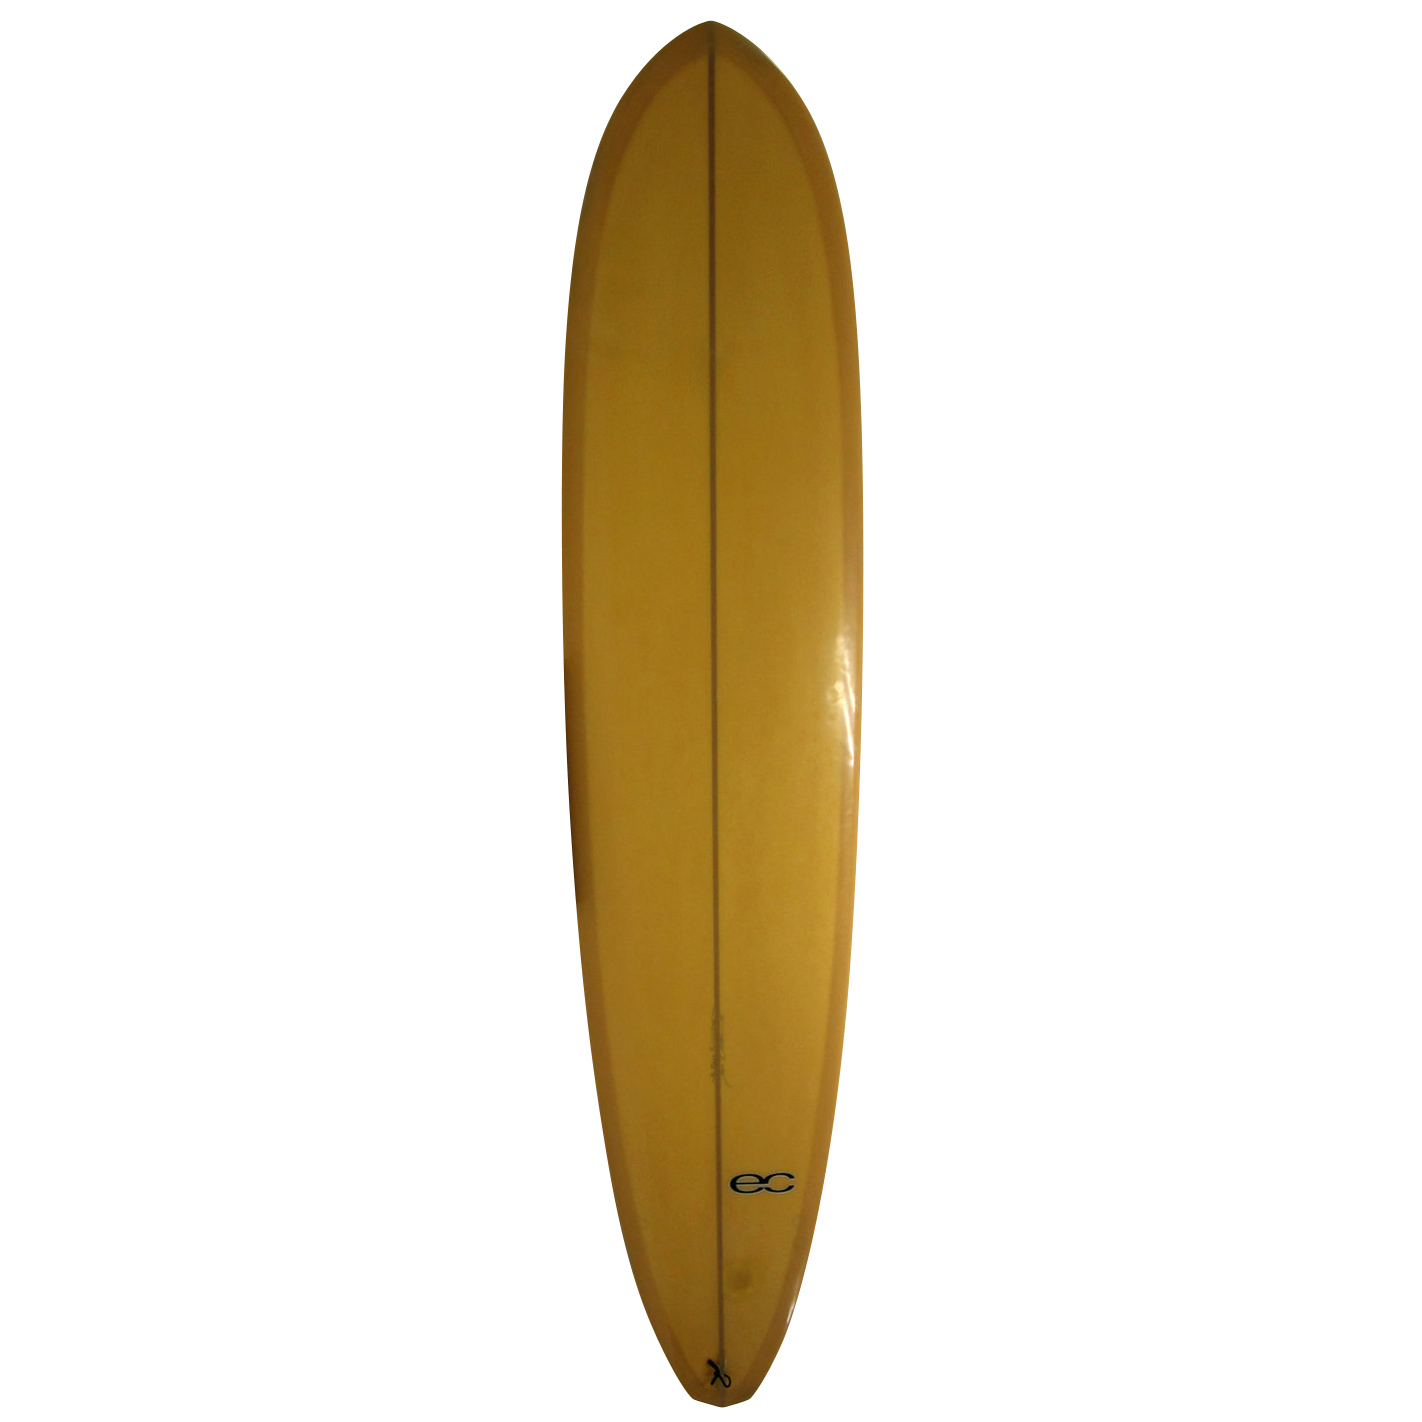  / EC Surfboards / 9`2 COMP